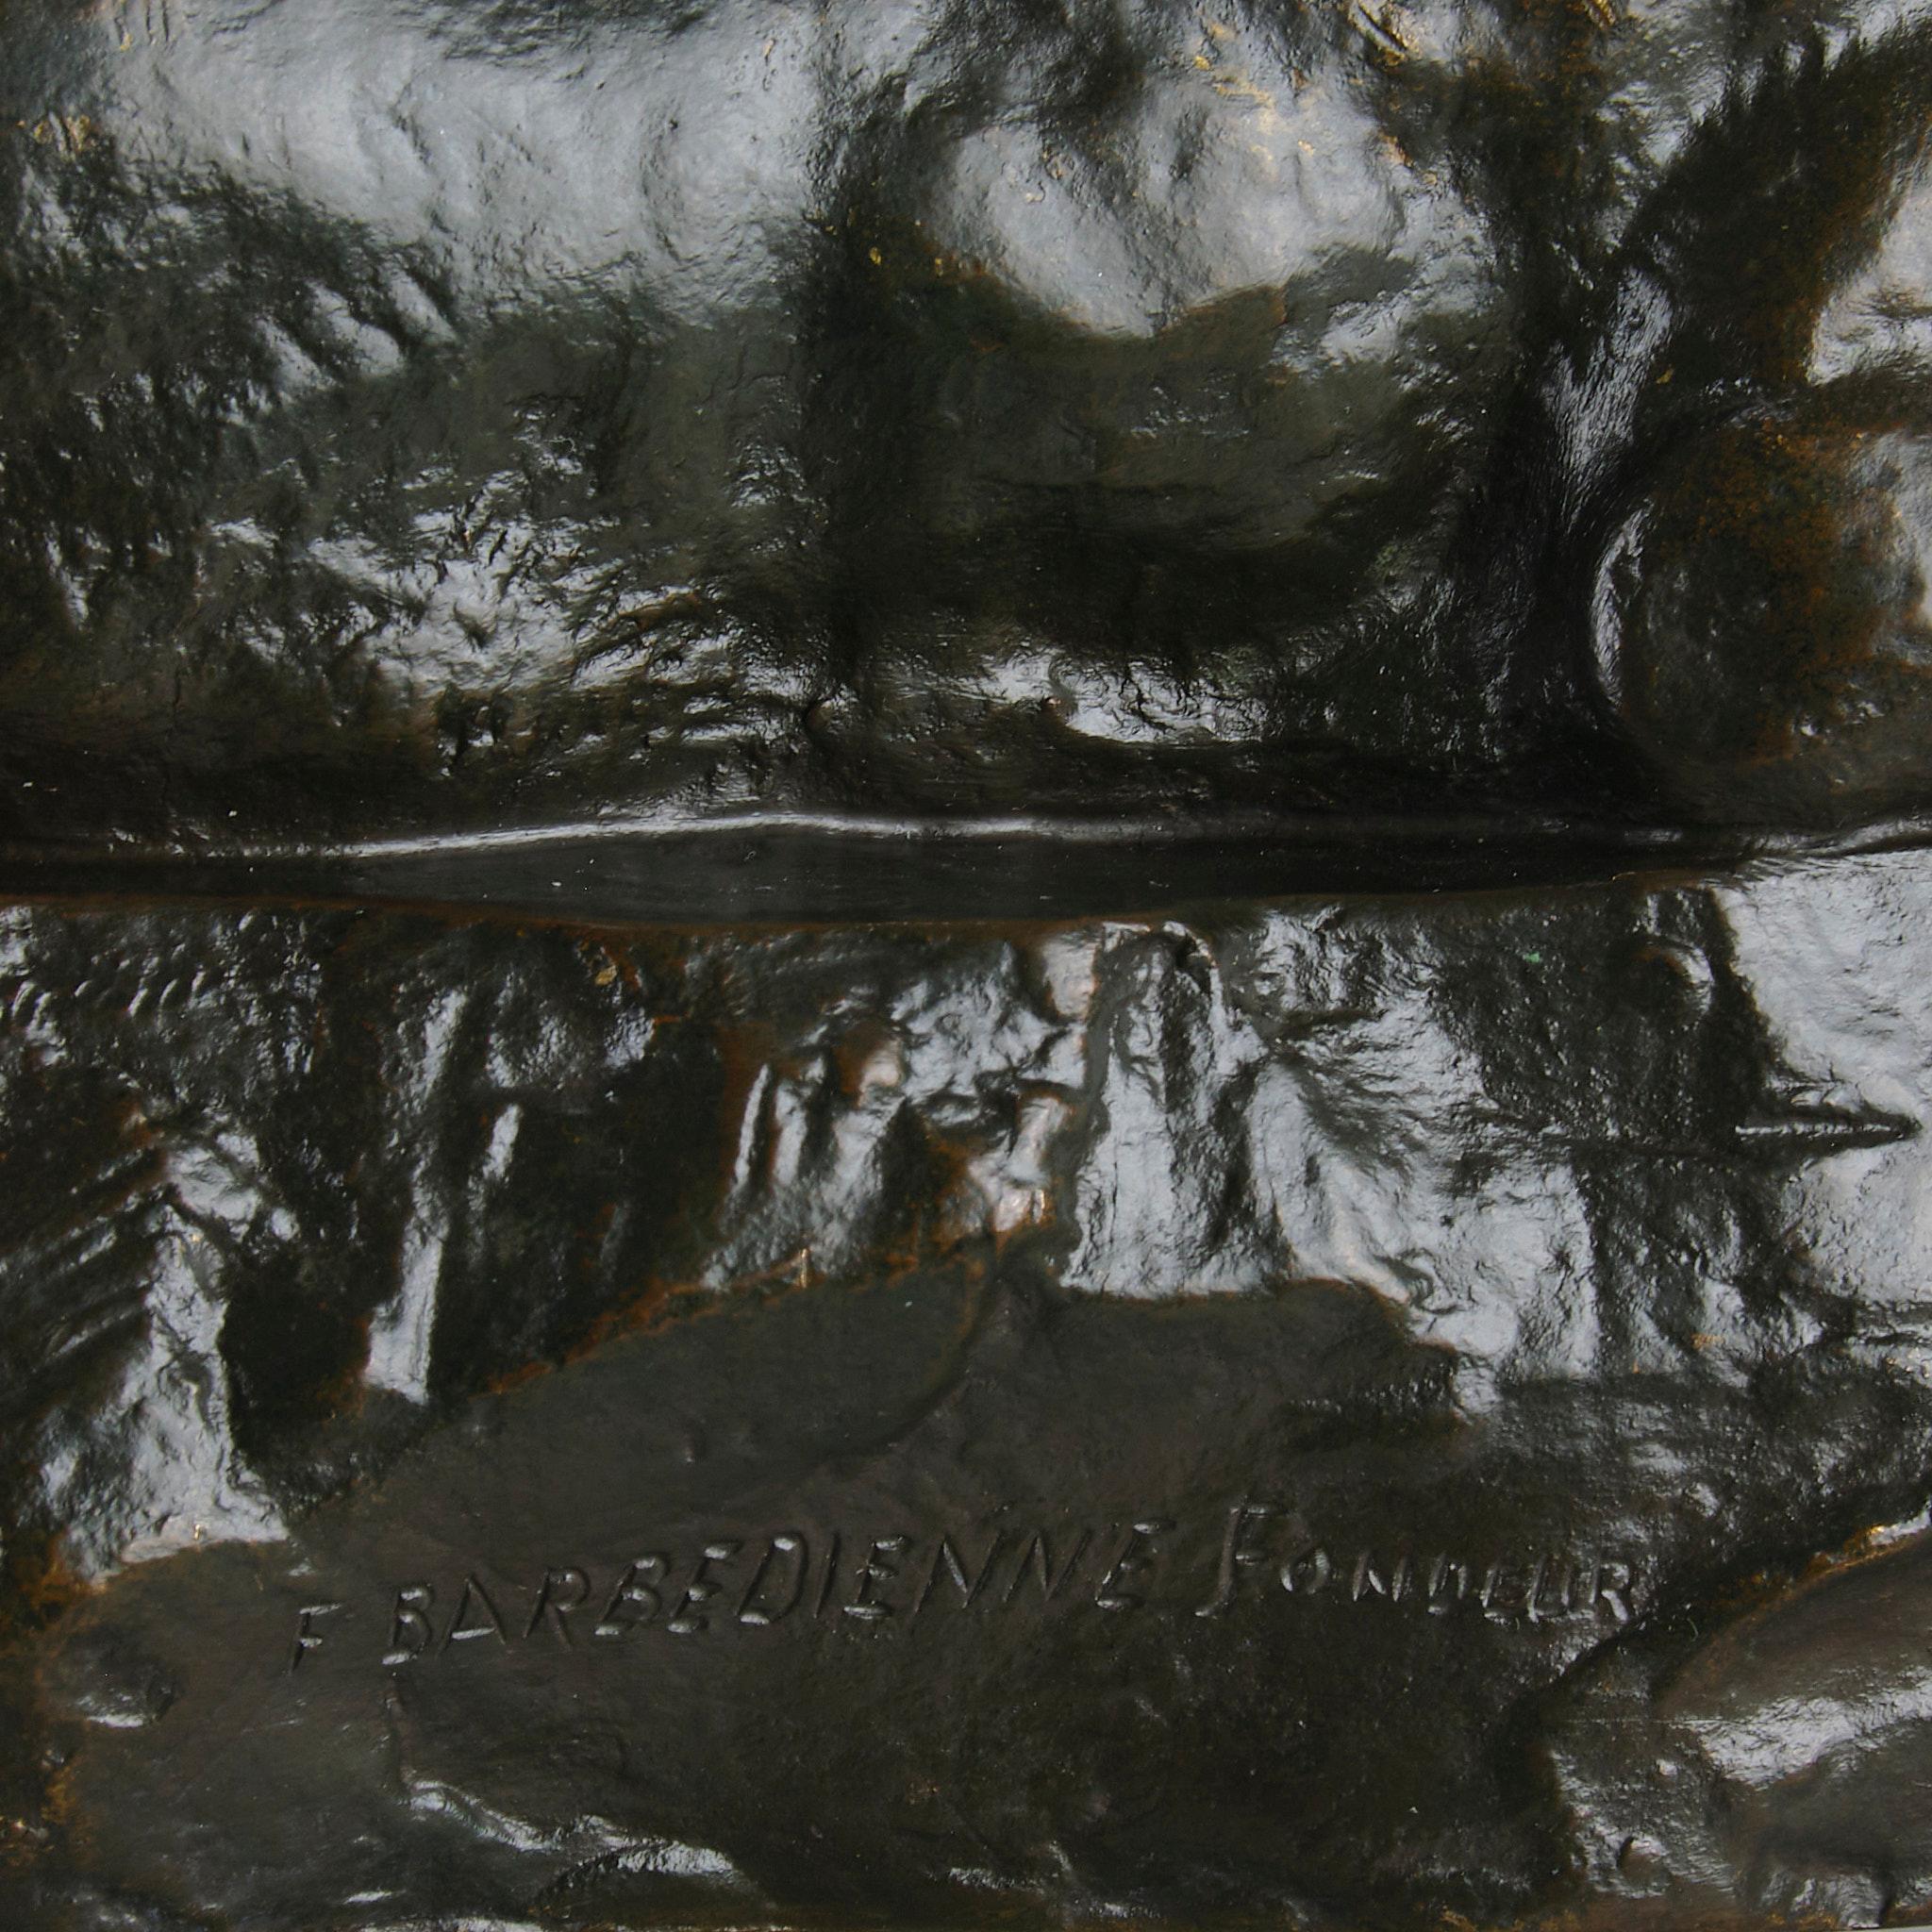 Animalische Bronze des 19. Jahrhunderts mit dem Titel 